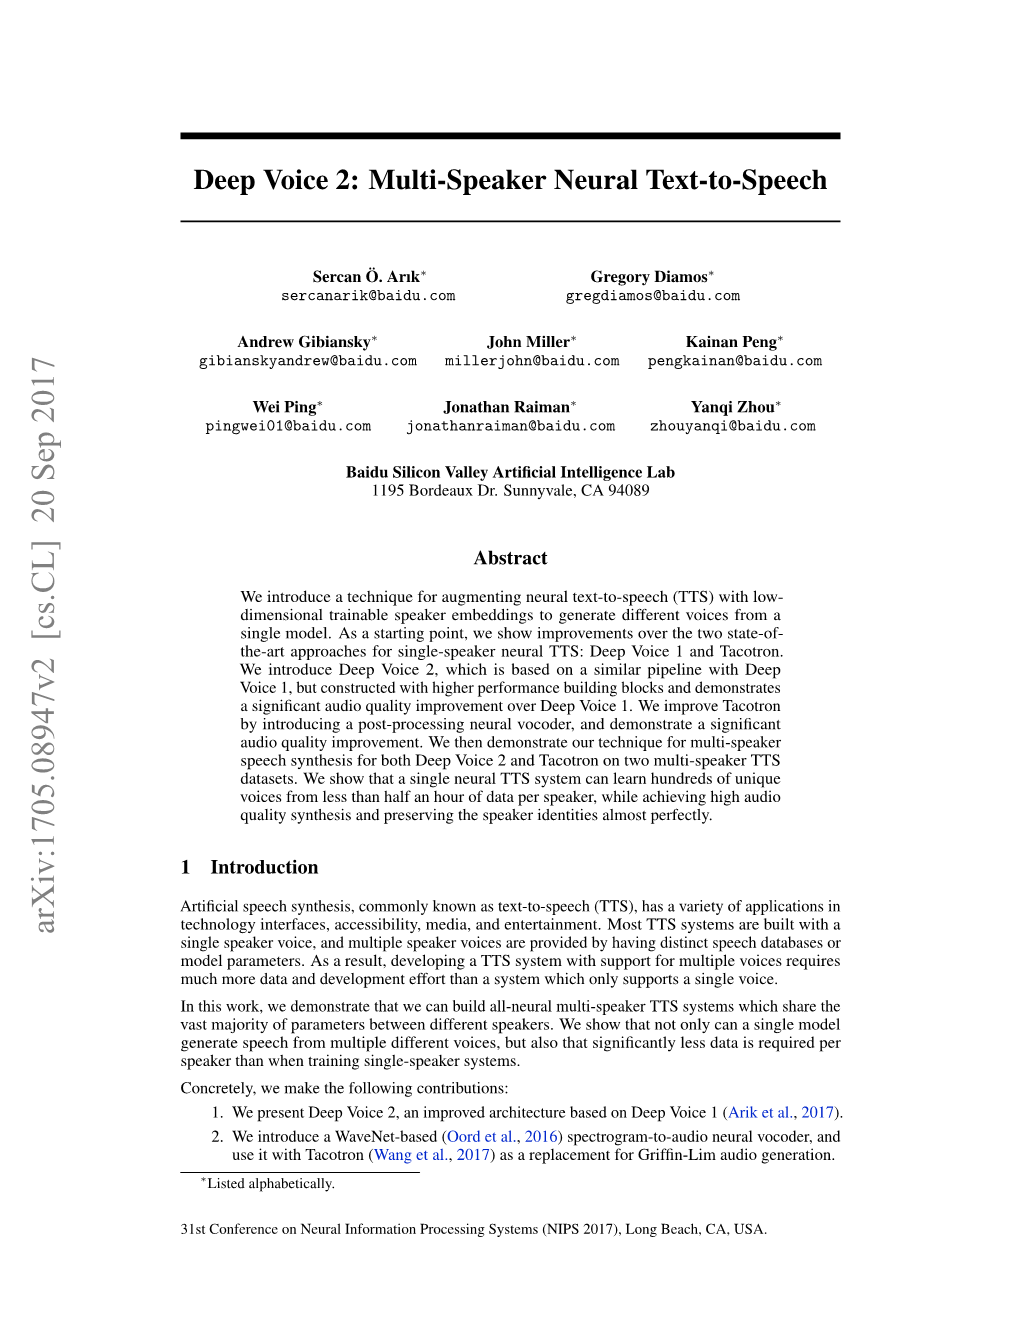 Deep Voice 2: Multi-Speaker Neural Text-To-Speech